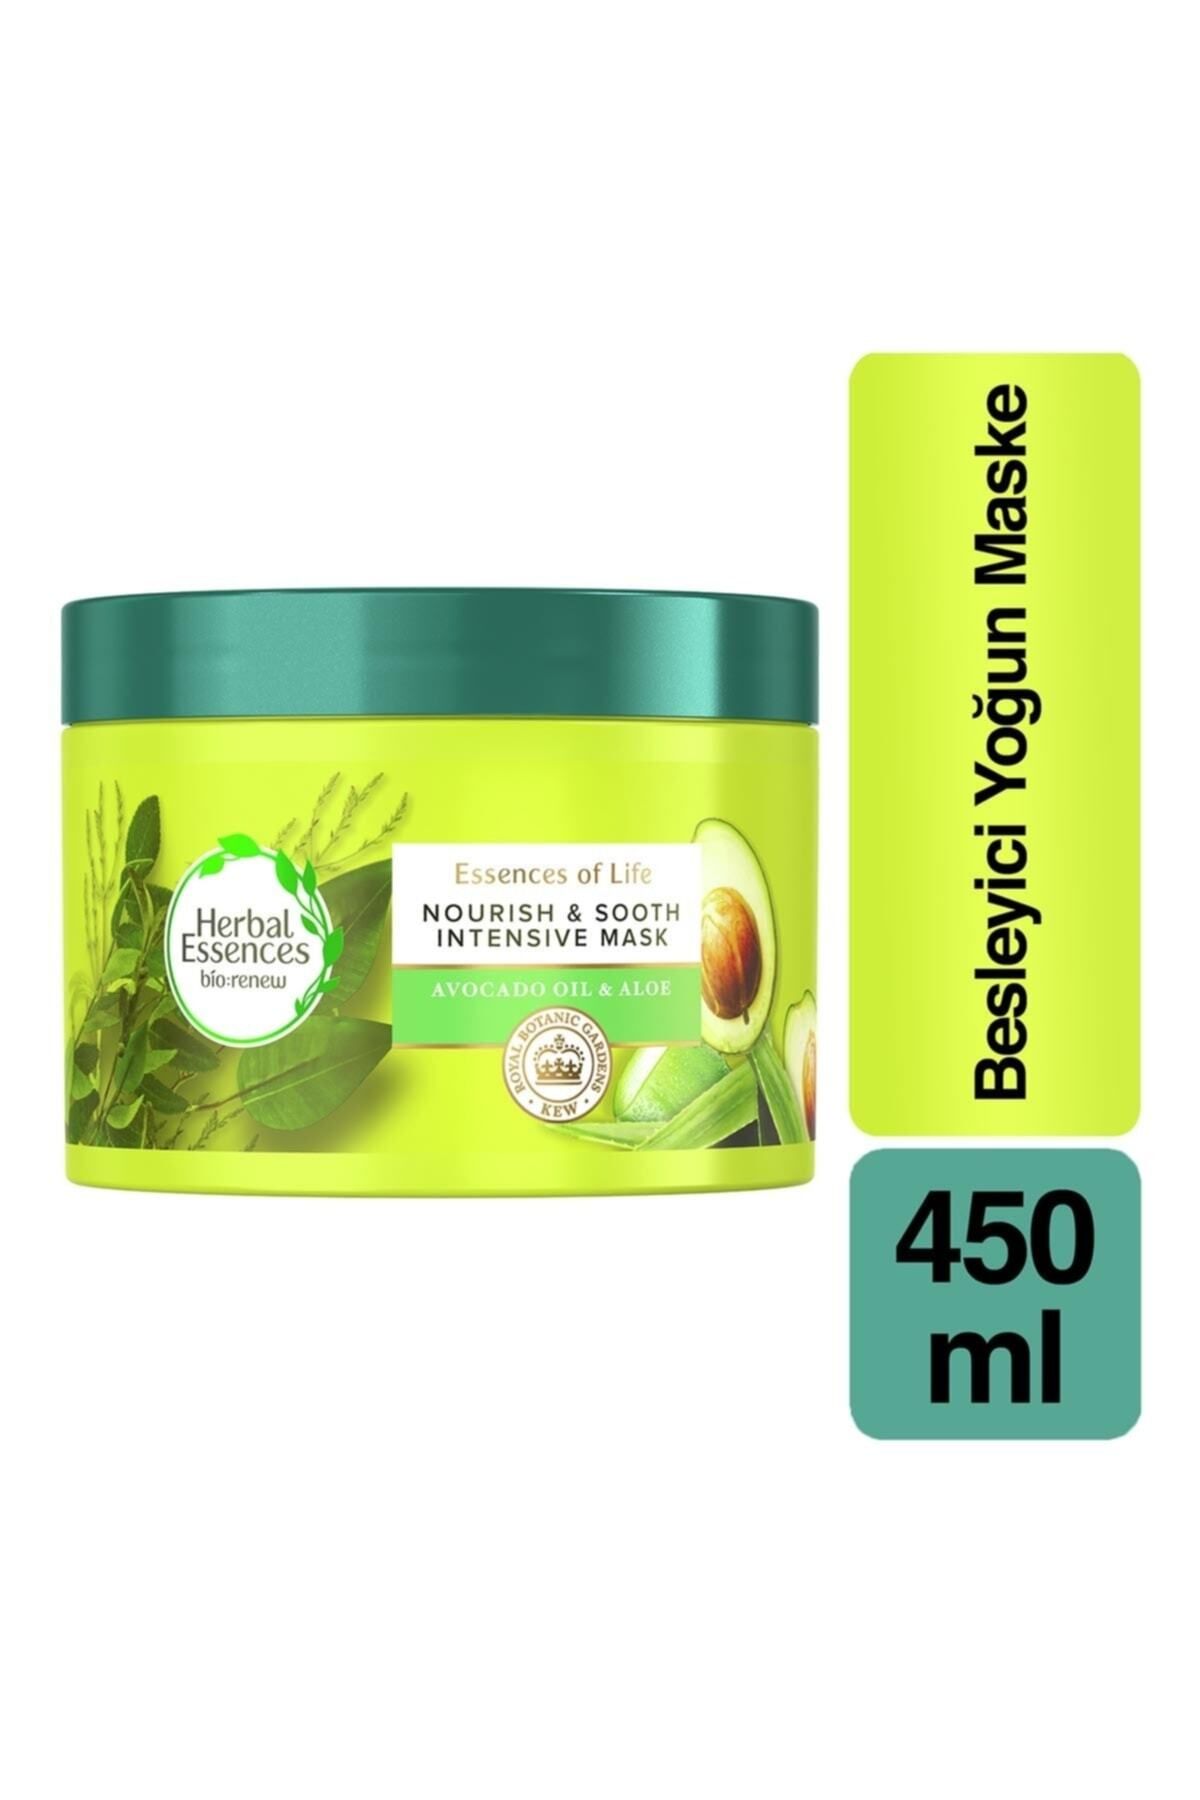 Herbal Essences Saç maskesi Avocado Yağı & Aloevera besleyici onarıcı Maske 450ml**meh-dem-35